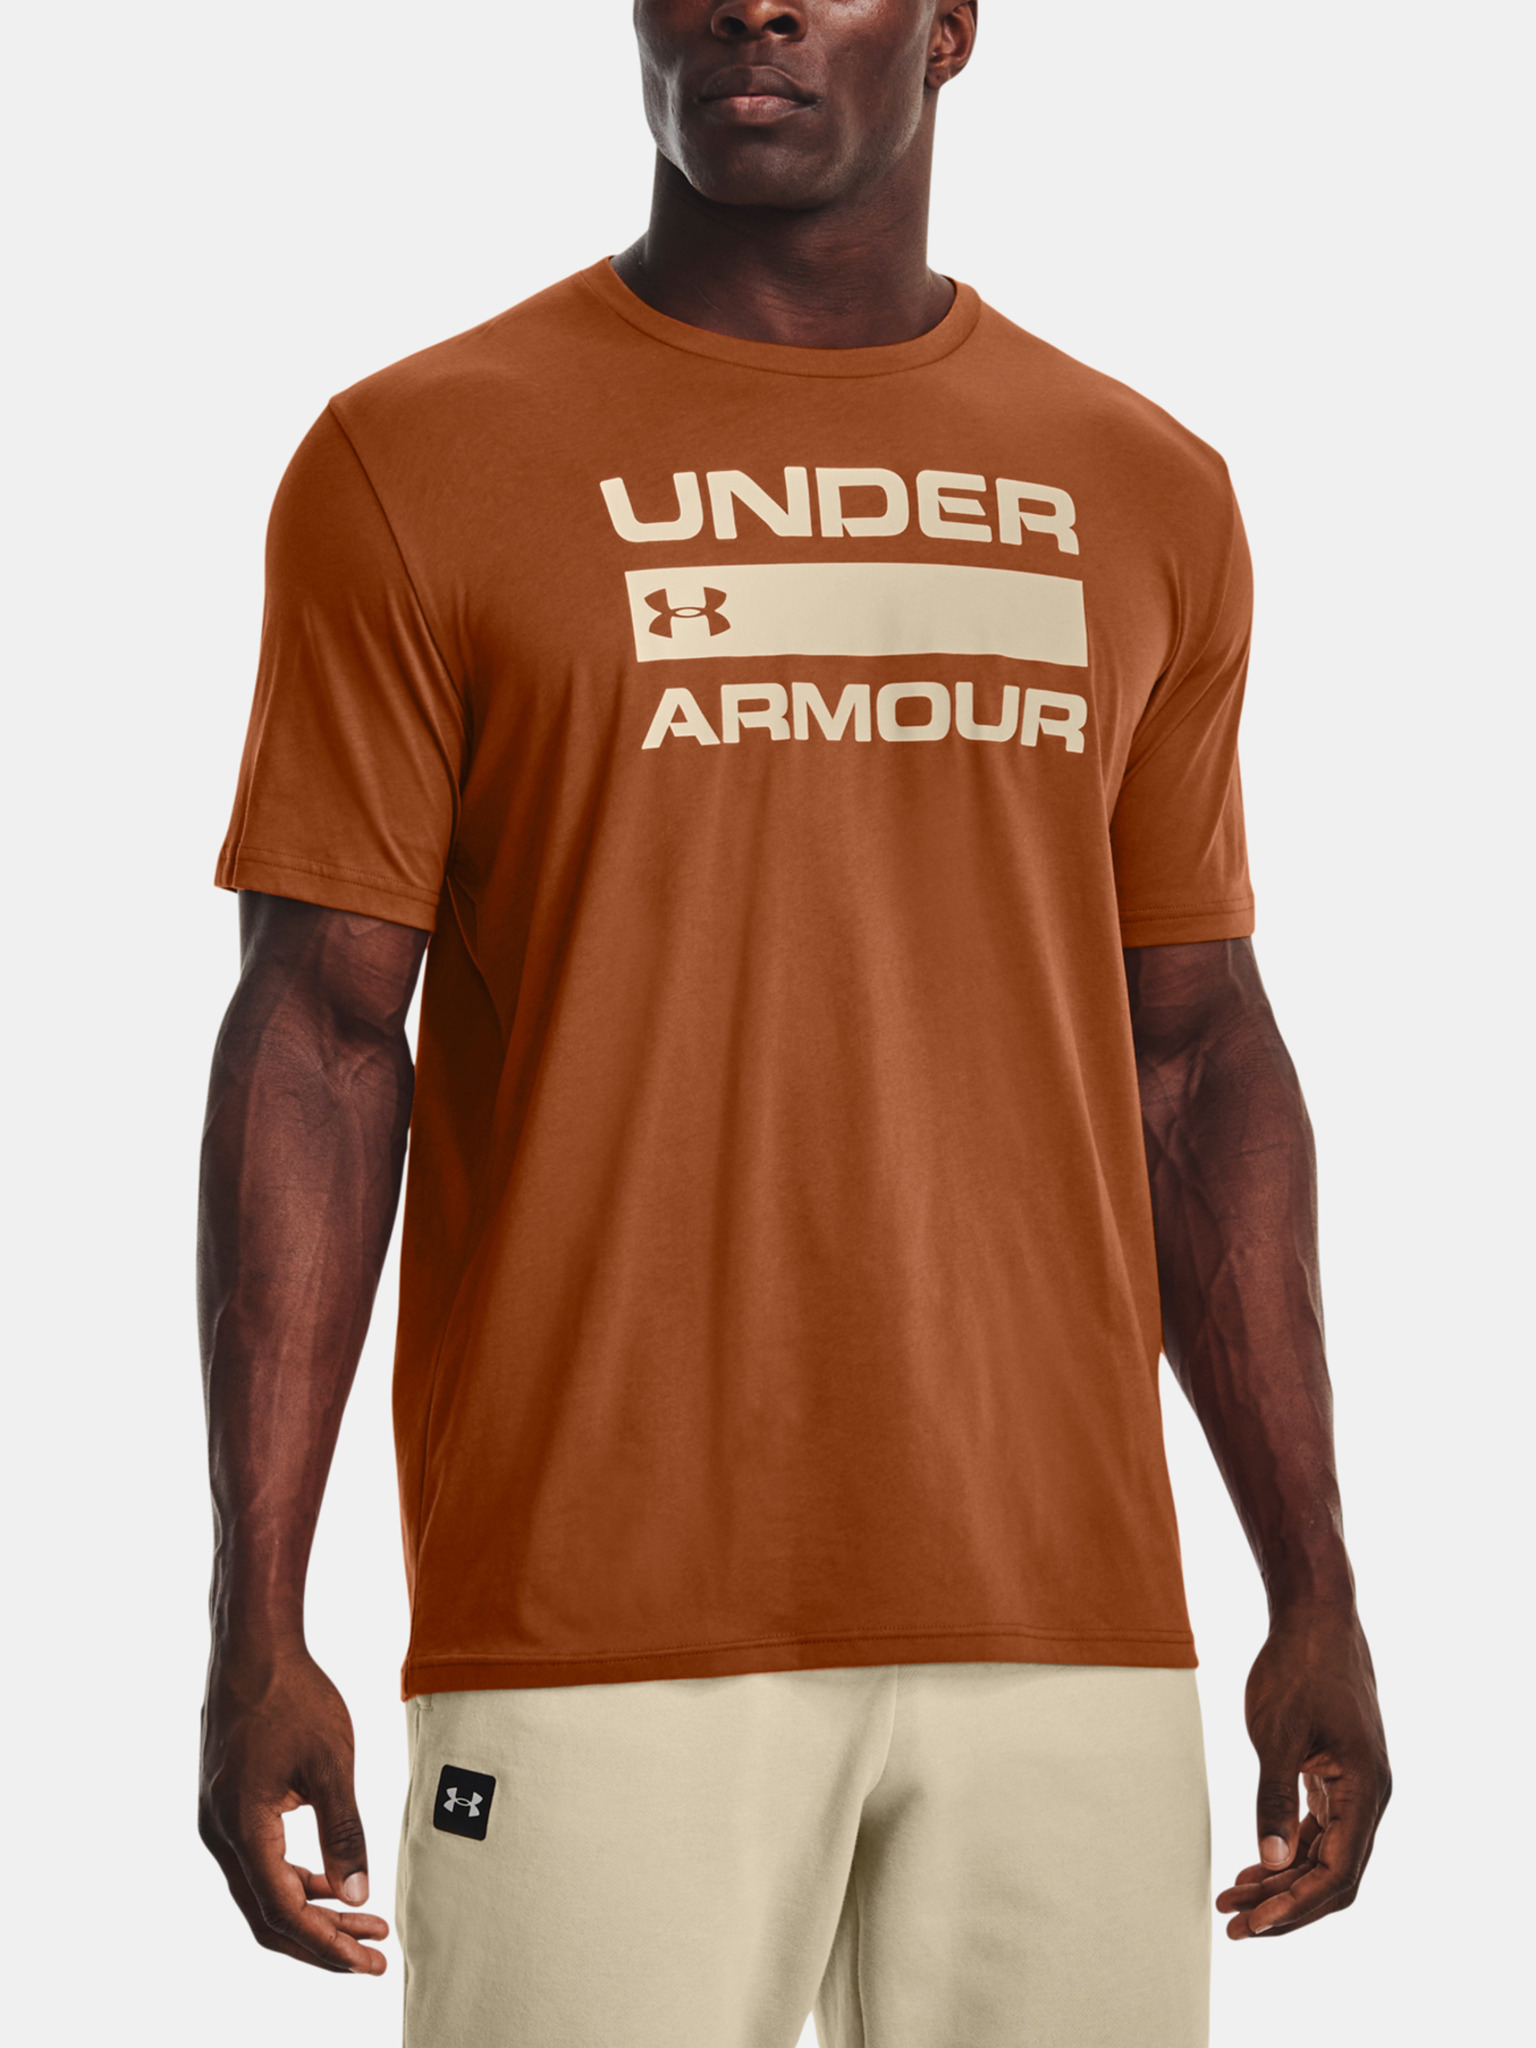 Kelder Schaken gelijktijdig Under Armour - UA Team Issue Wordmark T-Shirt Bibloo.nl